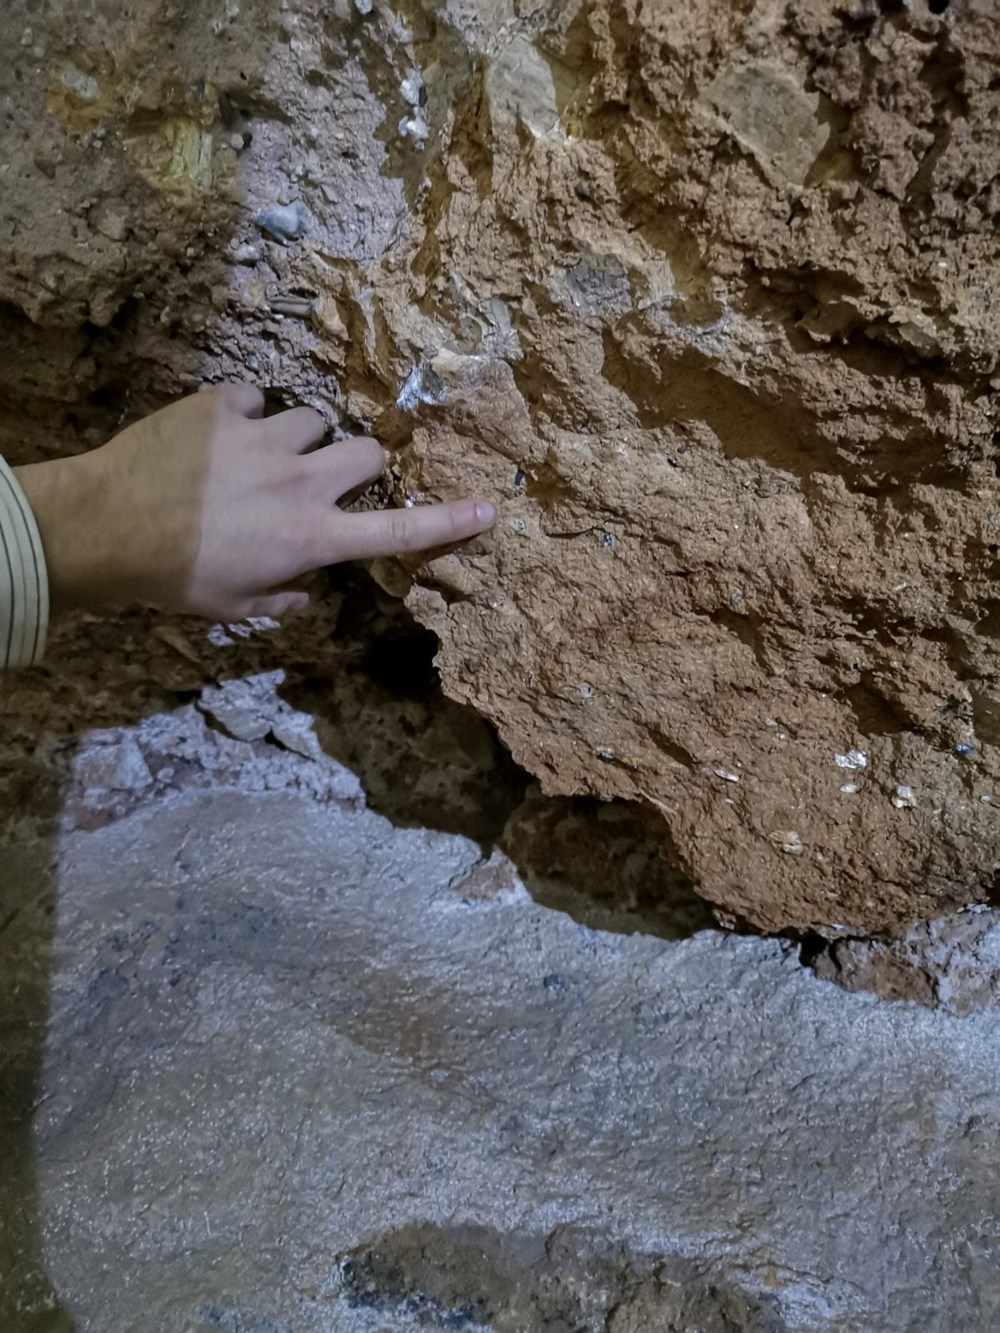 130 bin yıl önce yaşayan Denisovalı bir çocuğa ait diş bulundu: İnsanların antik kuzenlerine ait bilinmeyenler ortaya çıktı - 1